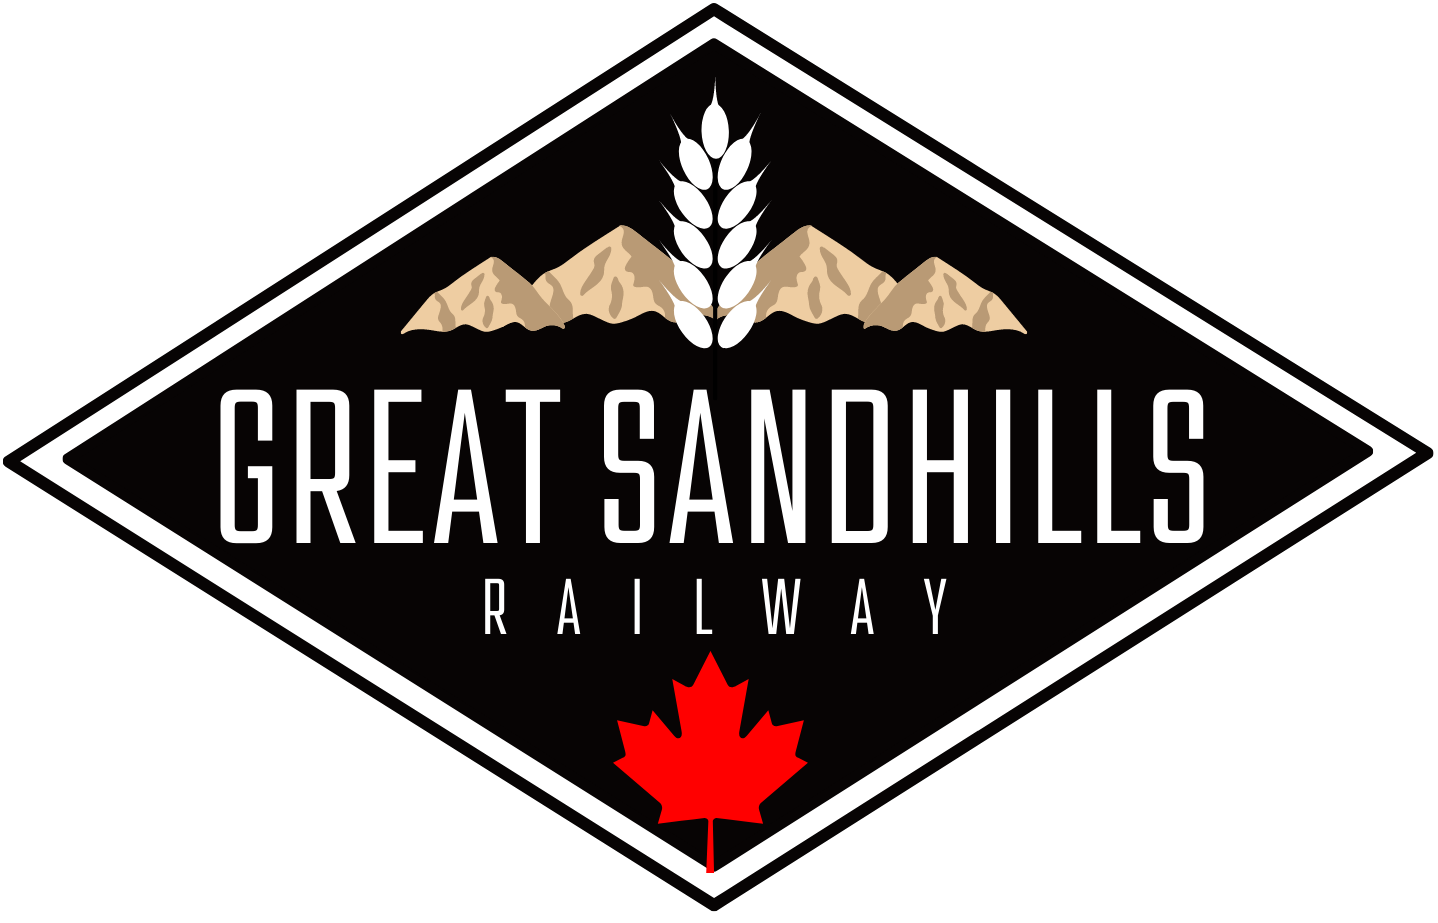 Great Sandhills Railway